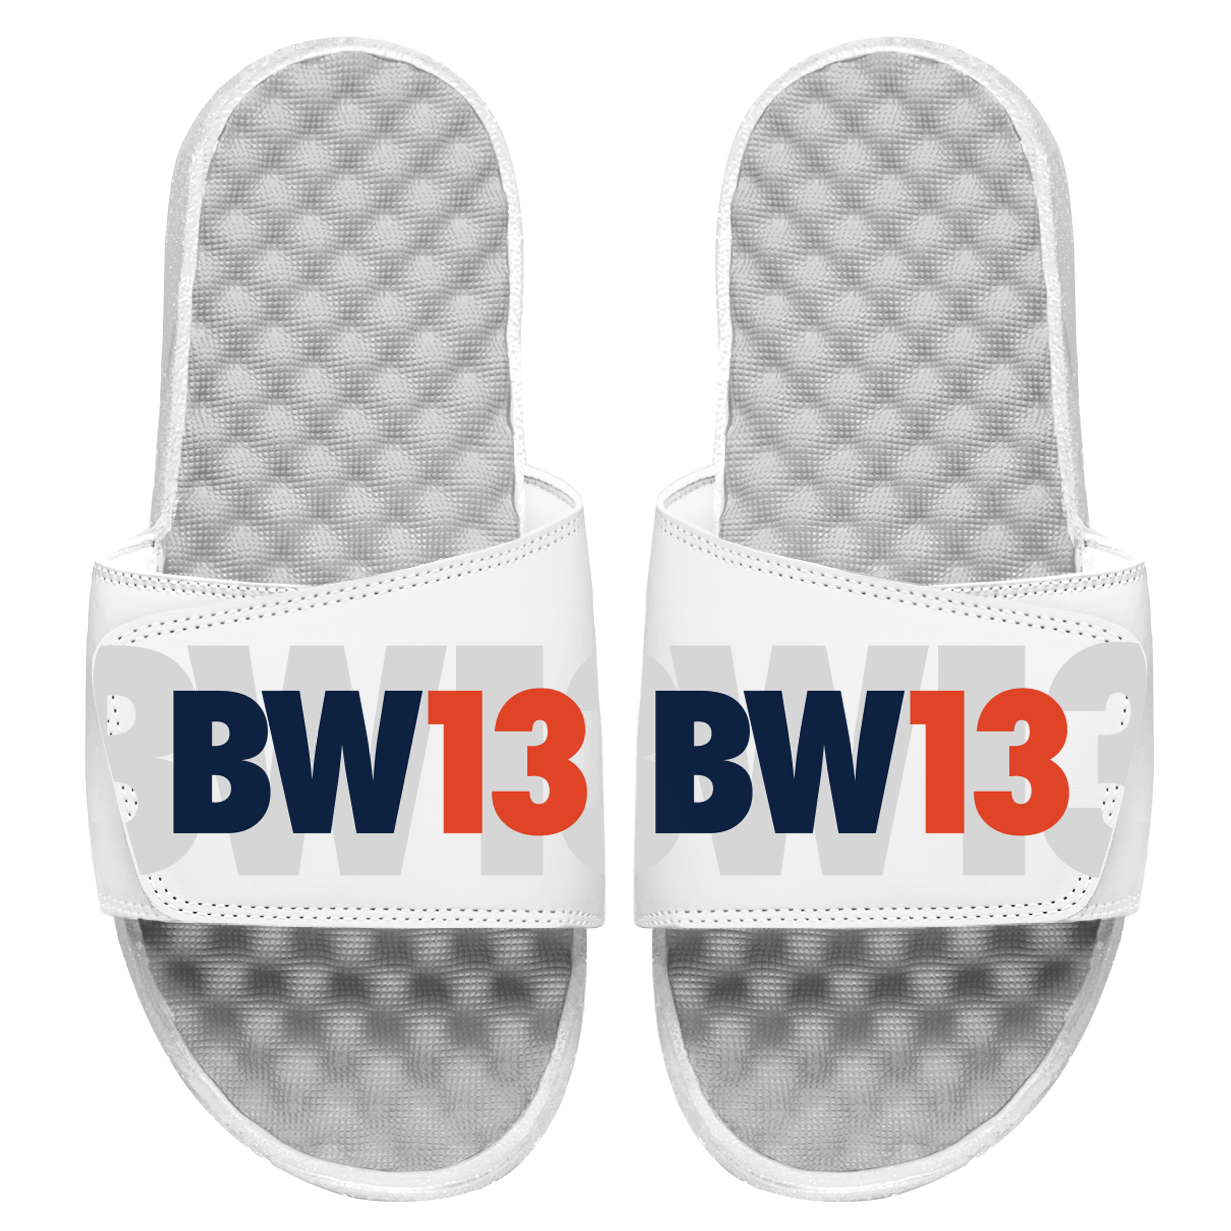 BW13 Slides